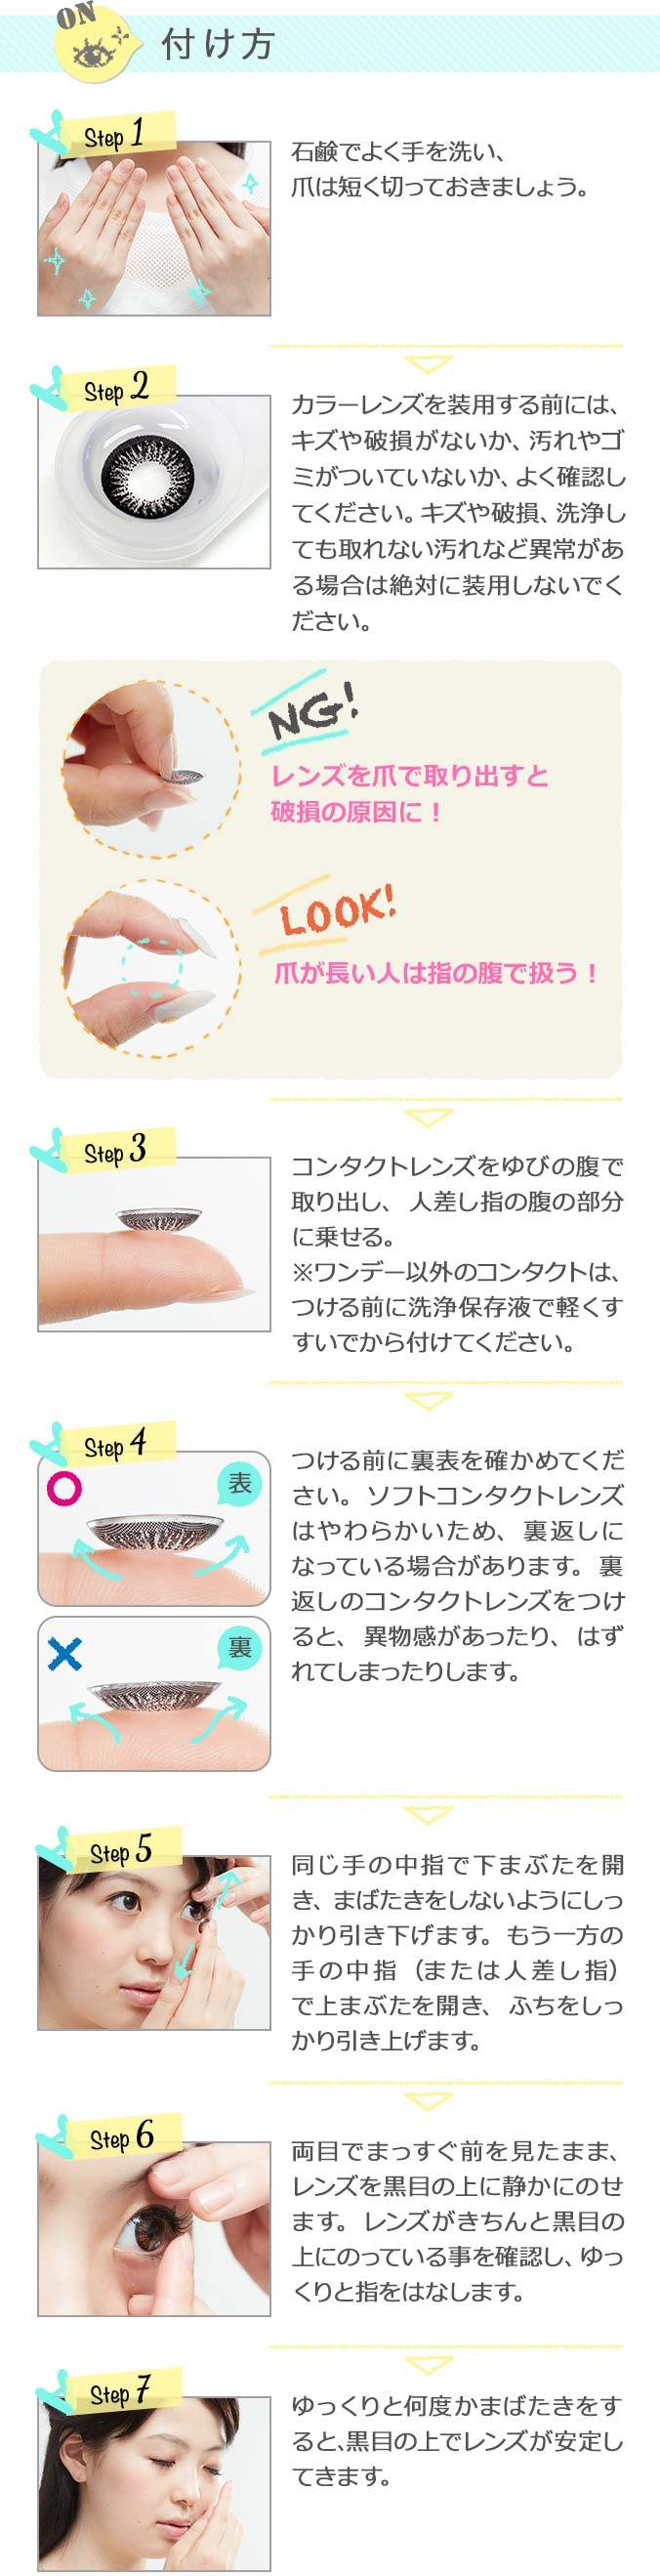 カラコンの正しい付け方を解説します。,Step1,石鹸でよく手を洗い、爪は短く切っておきましょう。,Step2,レンズを装用する前には、傷や破損がないか、汚れやゴミがついていないか、よく確認してください。,Step3,コンタクトレンズをゆびの腹で取り出し、人差し指の腹の部分に乗せる。,Step4,つける前に裏表を確かめてください。,Step5,同じ手の中指で下まぶたを開き、もう一方の中指（または人差し指）で上まぶたを開きます。,Step6,両目でまっすぐ前を見たまま、レンズを黒目の上に静かにのせます。,Step7,ゆっくりと何度かまばたきをすると、黒目の上でレンズが安定します。